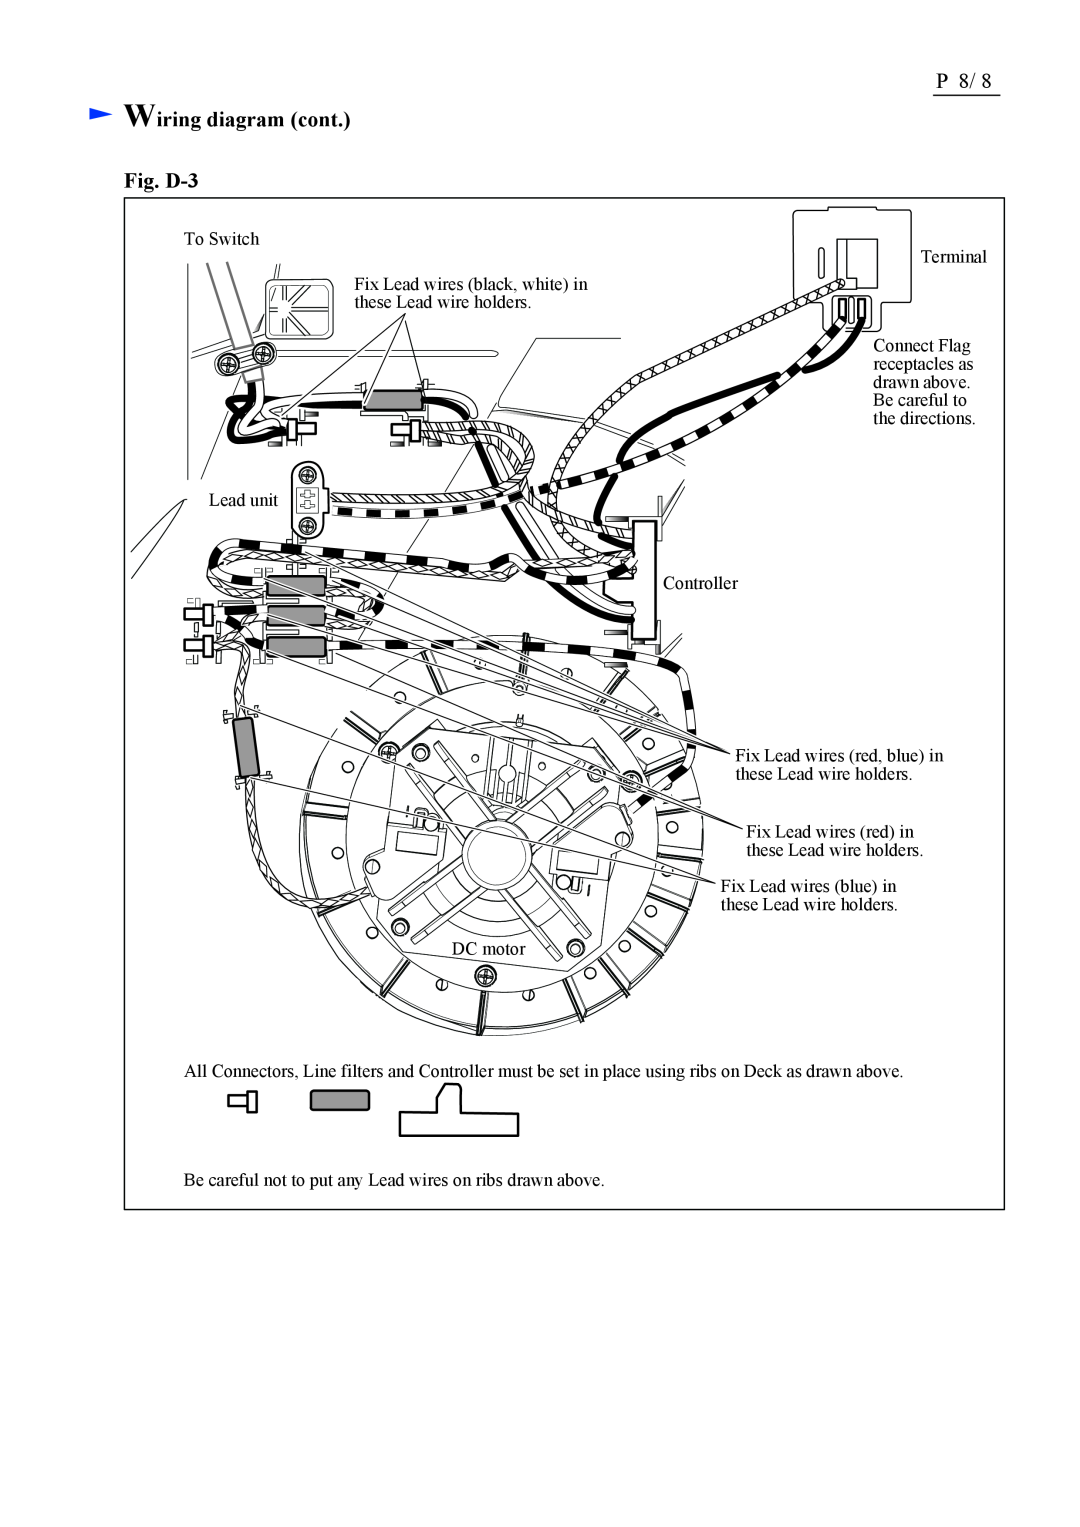 Makita BLM430, LM430D dimensions Wiring diagram cont Fig. D-3 